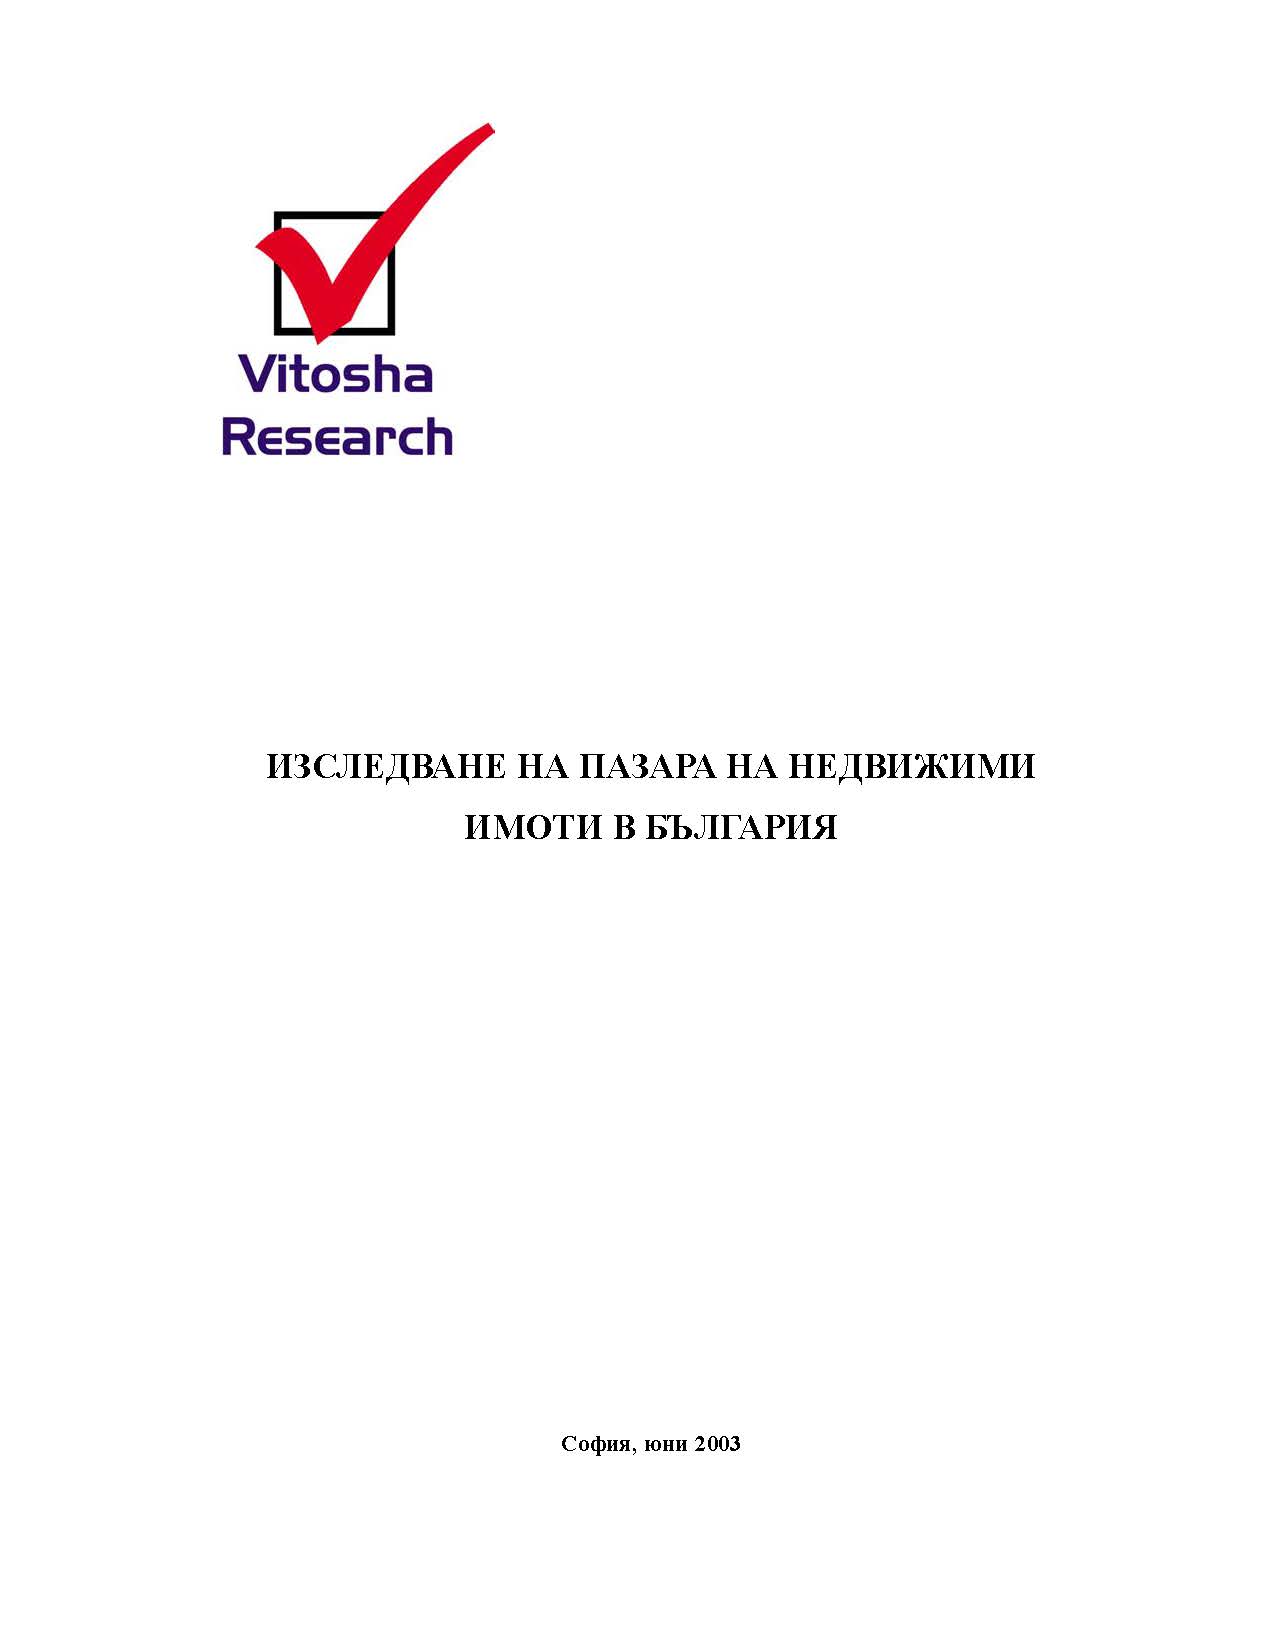 Изследване на пазара на недвижими имоти в България, Май 2003